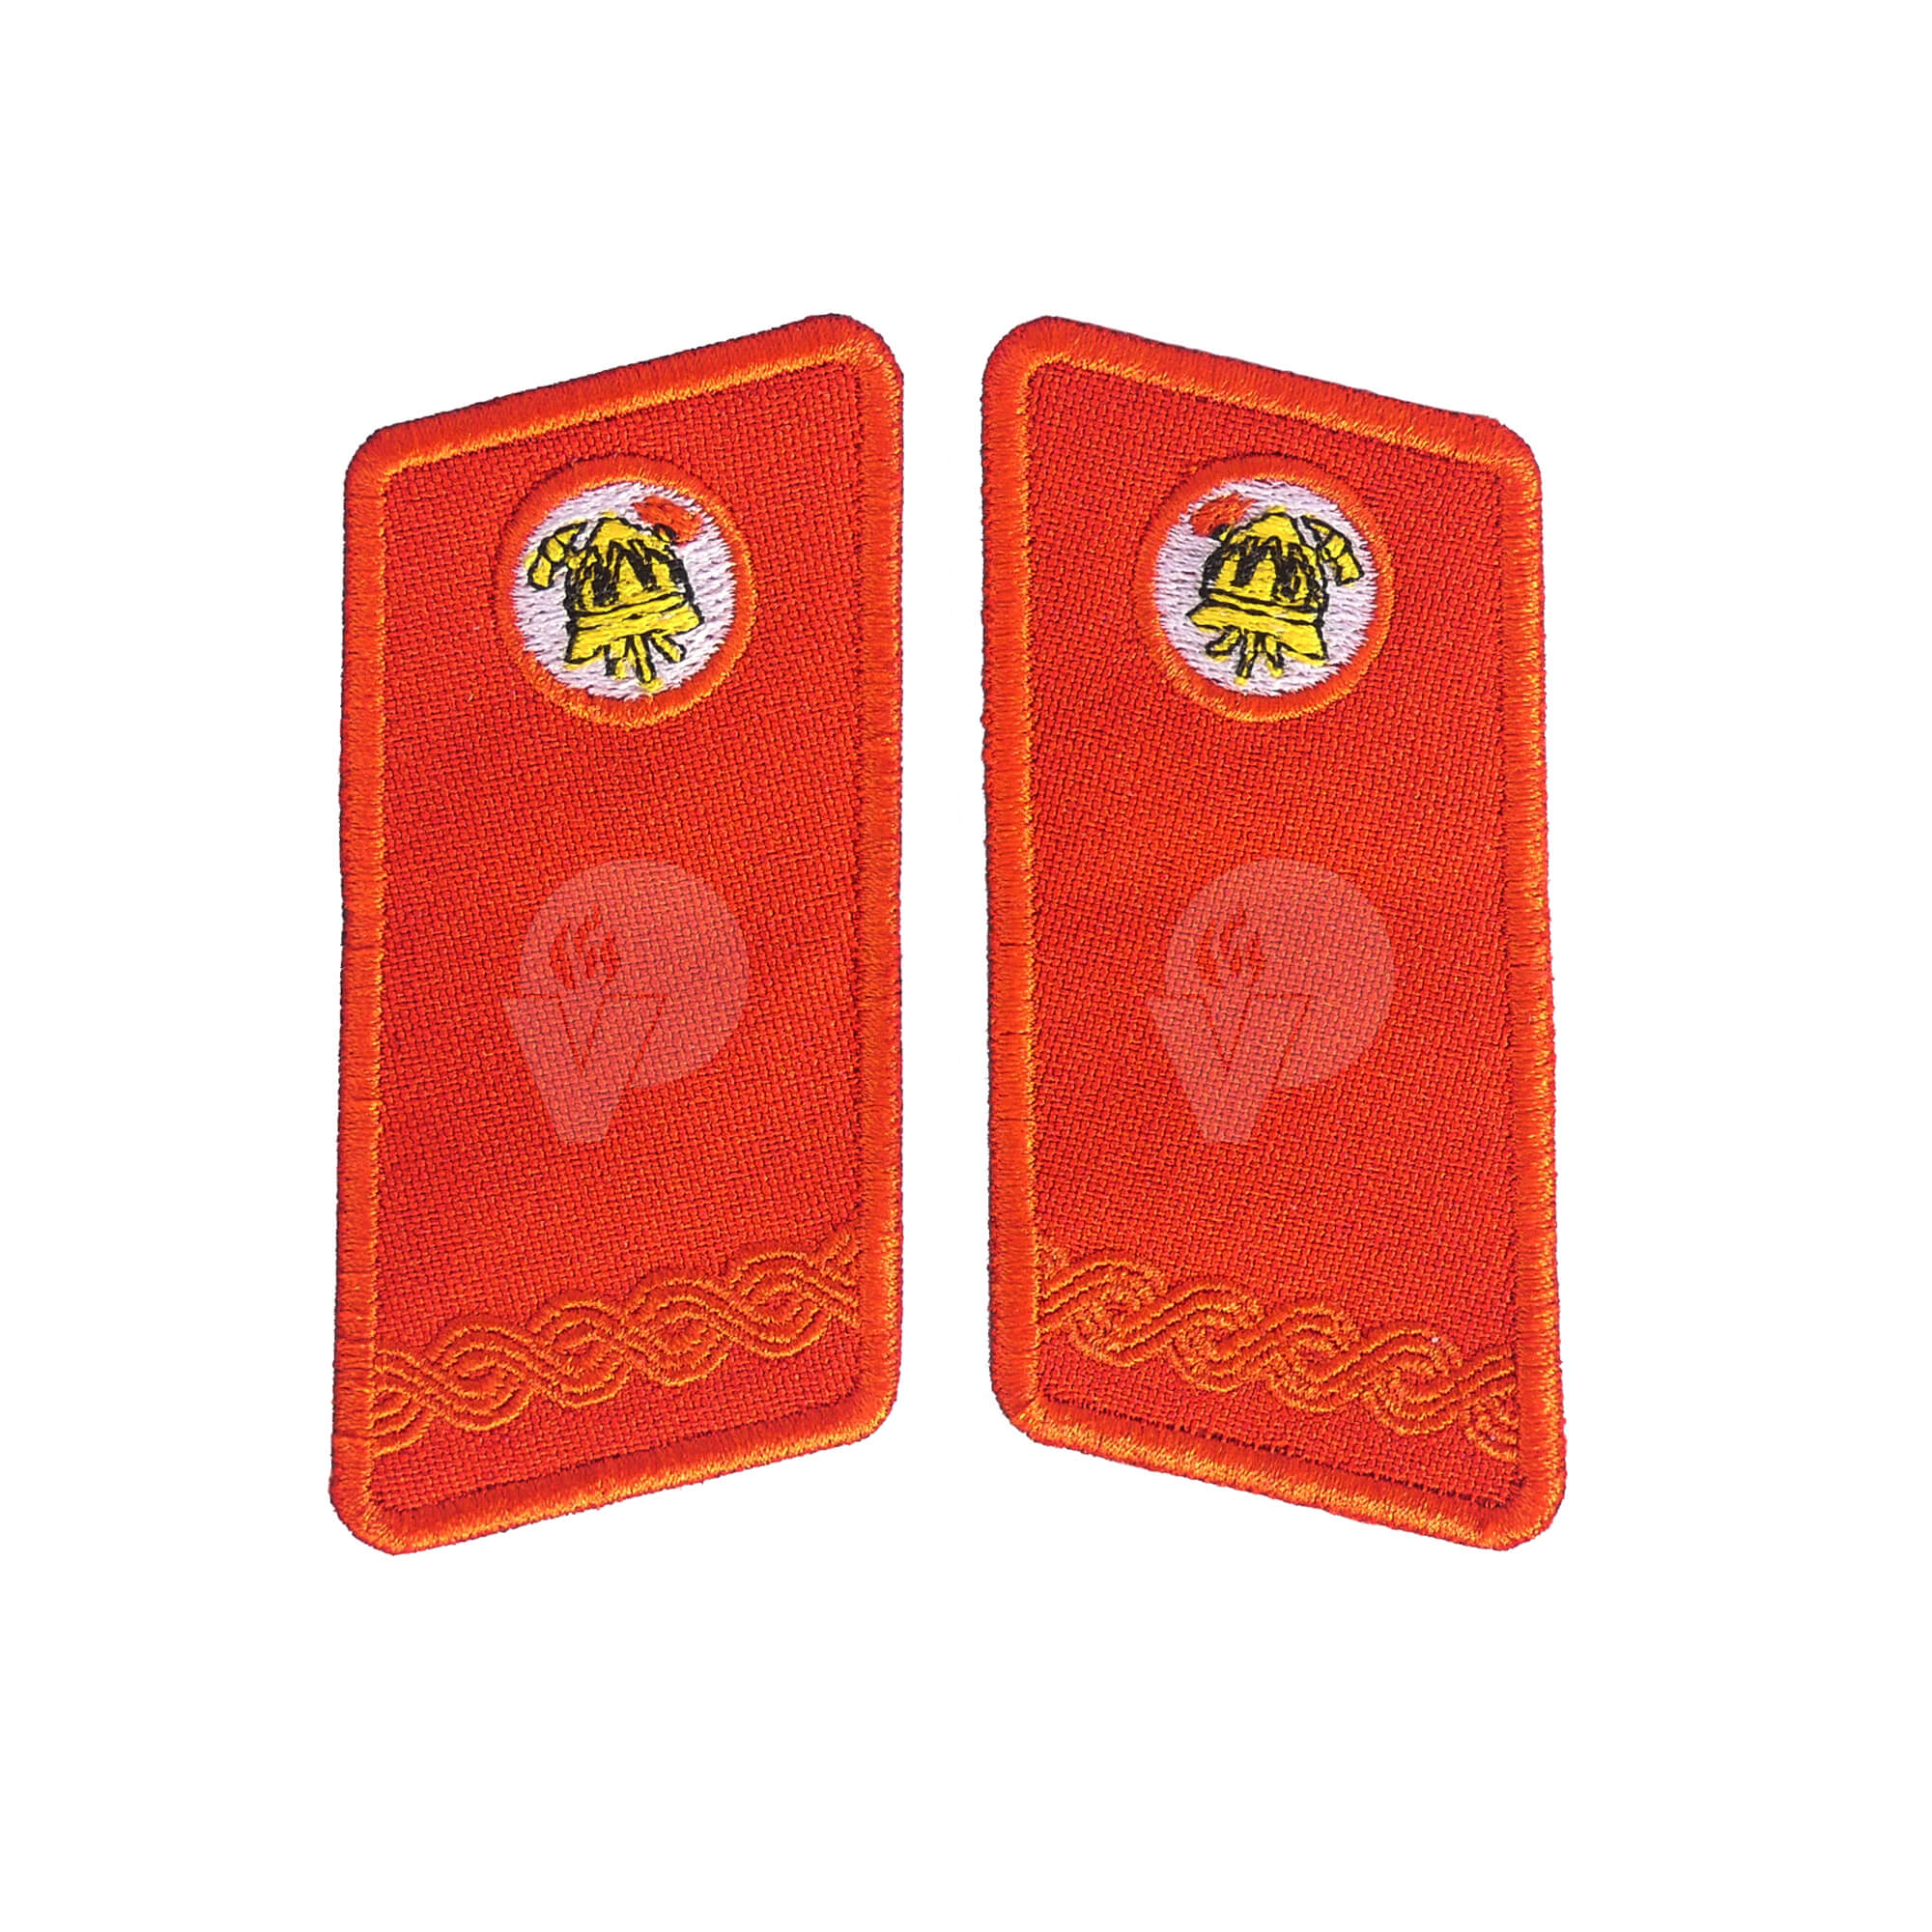 Firefighter Emblem for Formal Suit, Command member